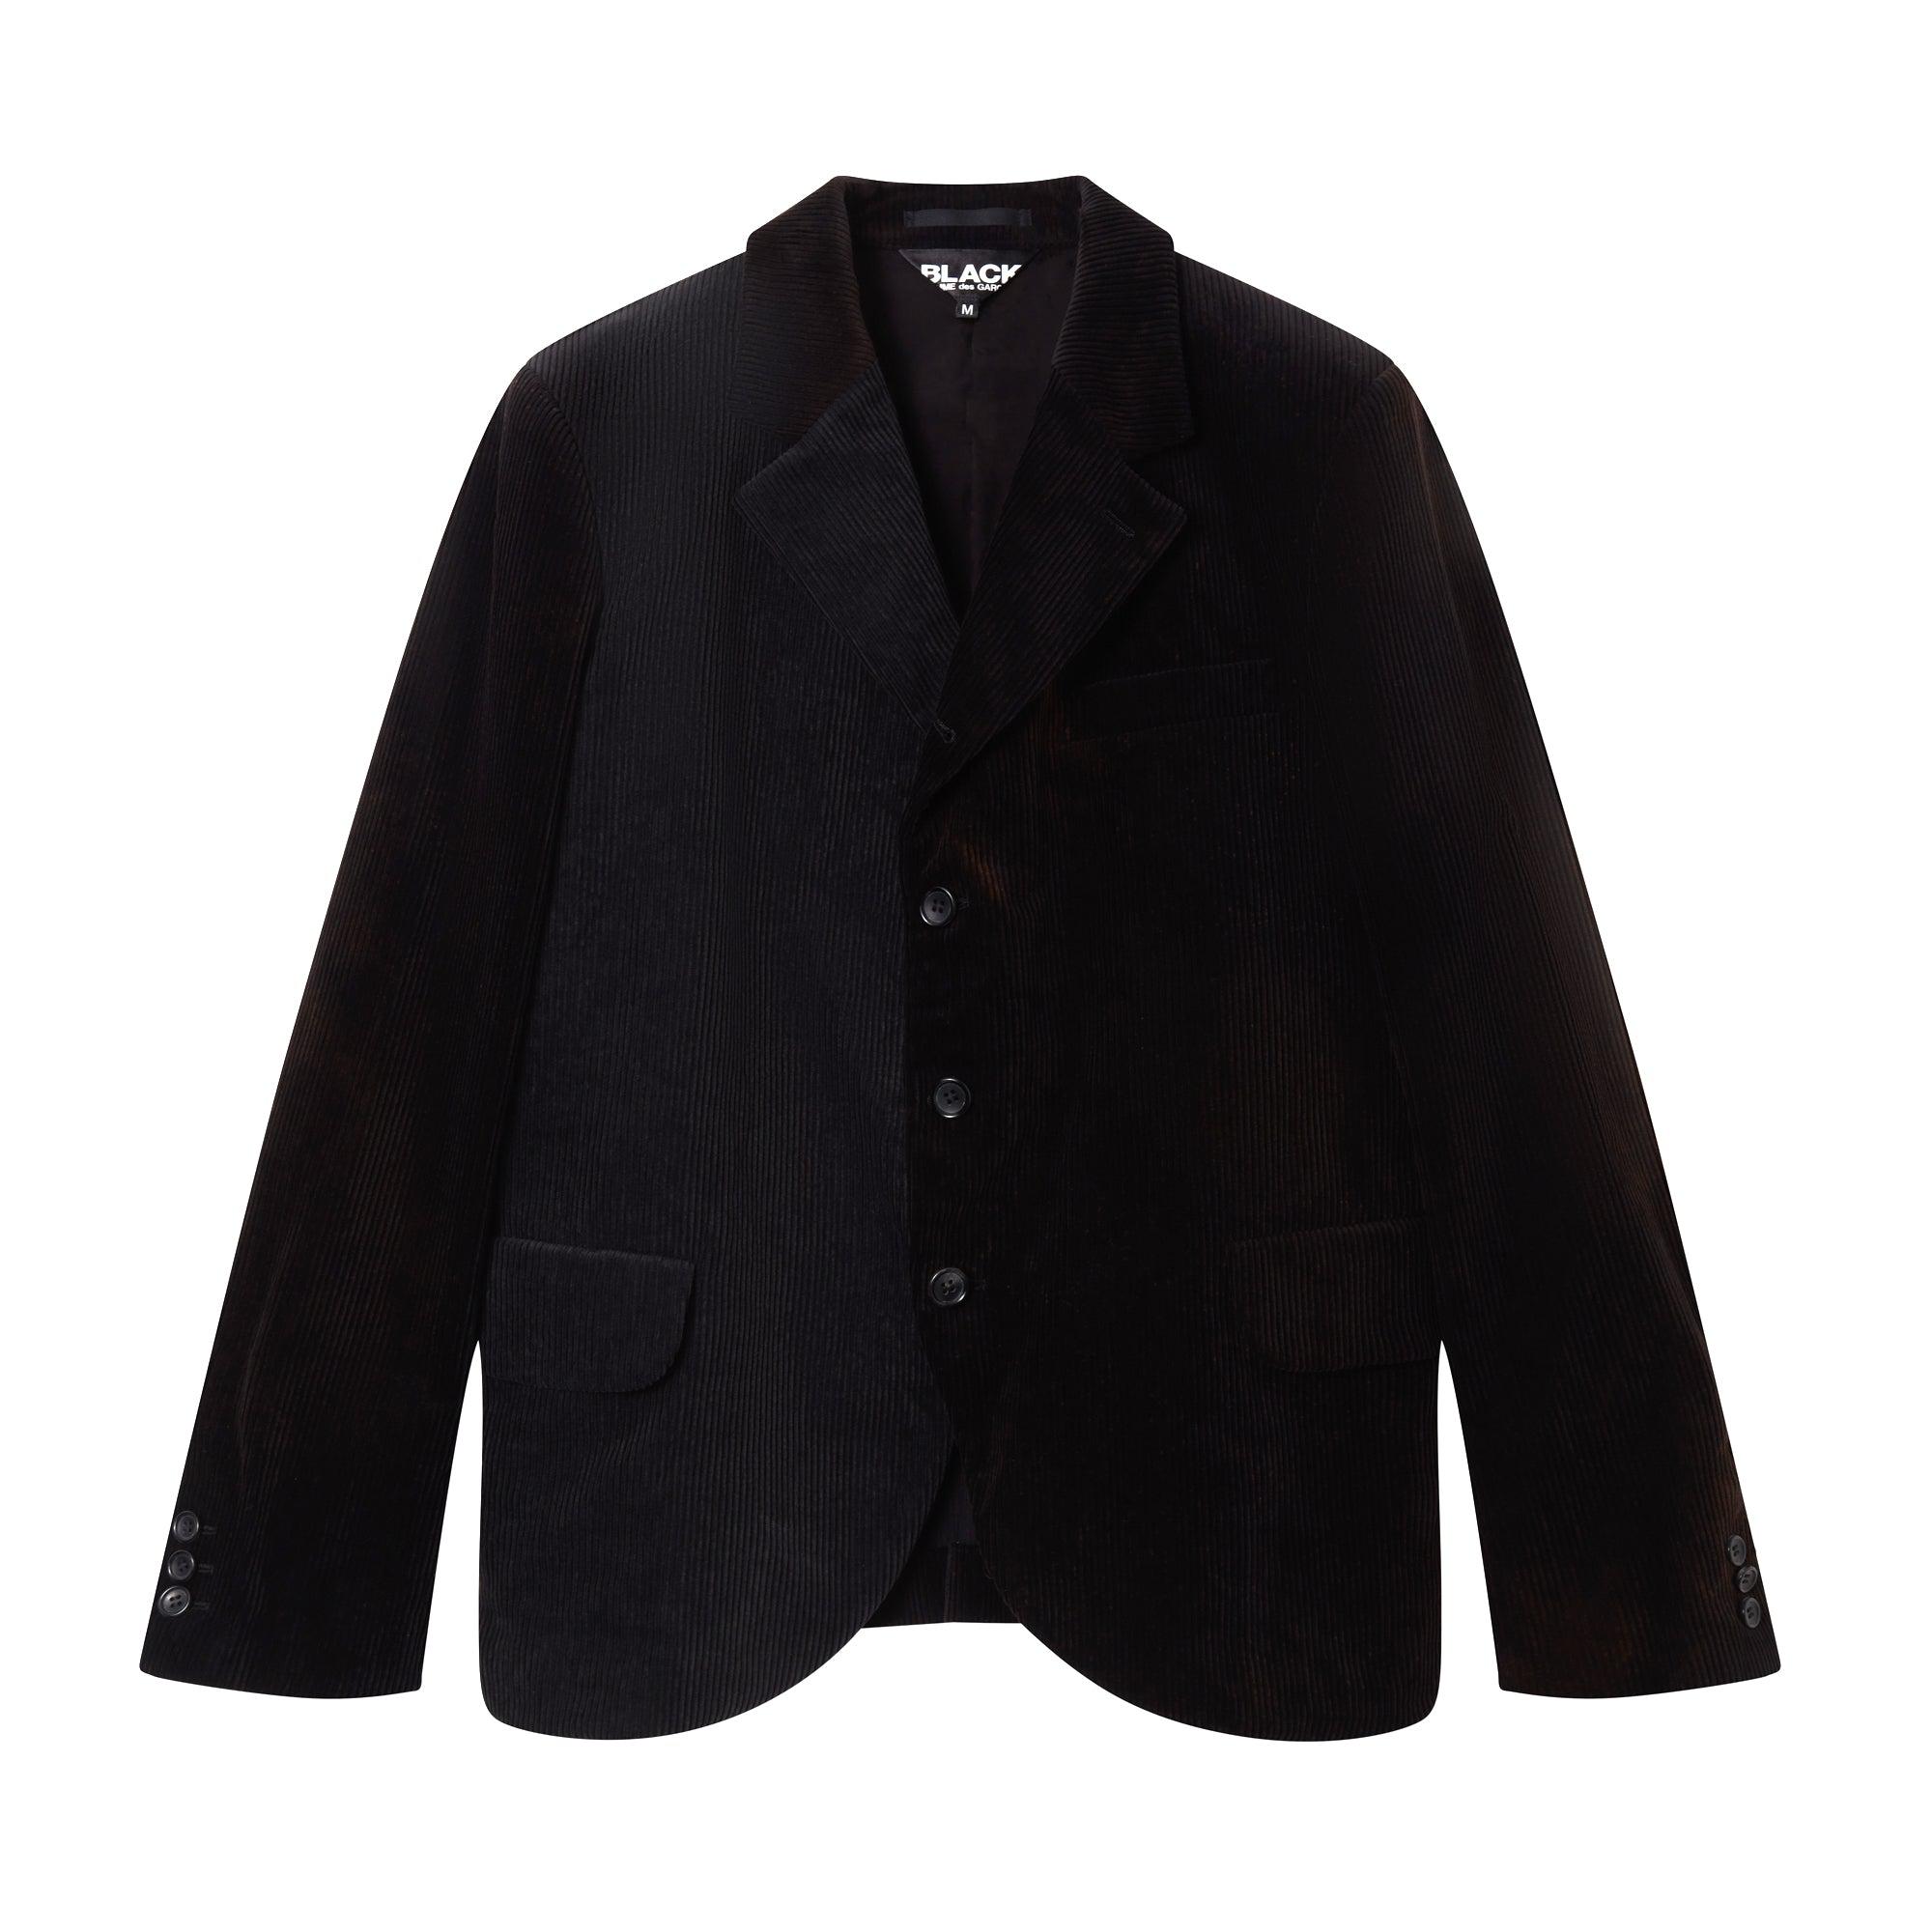 BLACK Comme des Garçons Tailored Corduroy Jacket (Black) by COMME DES GARCONS